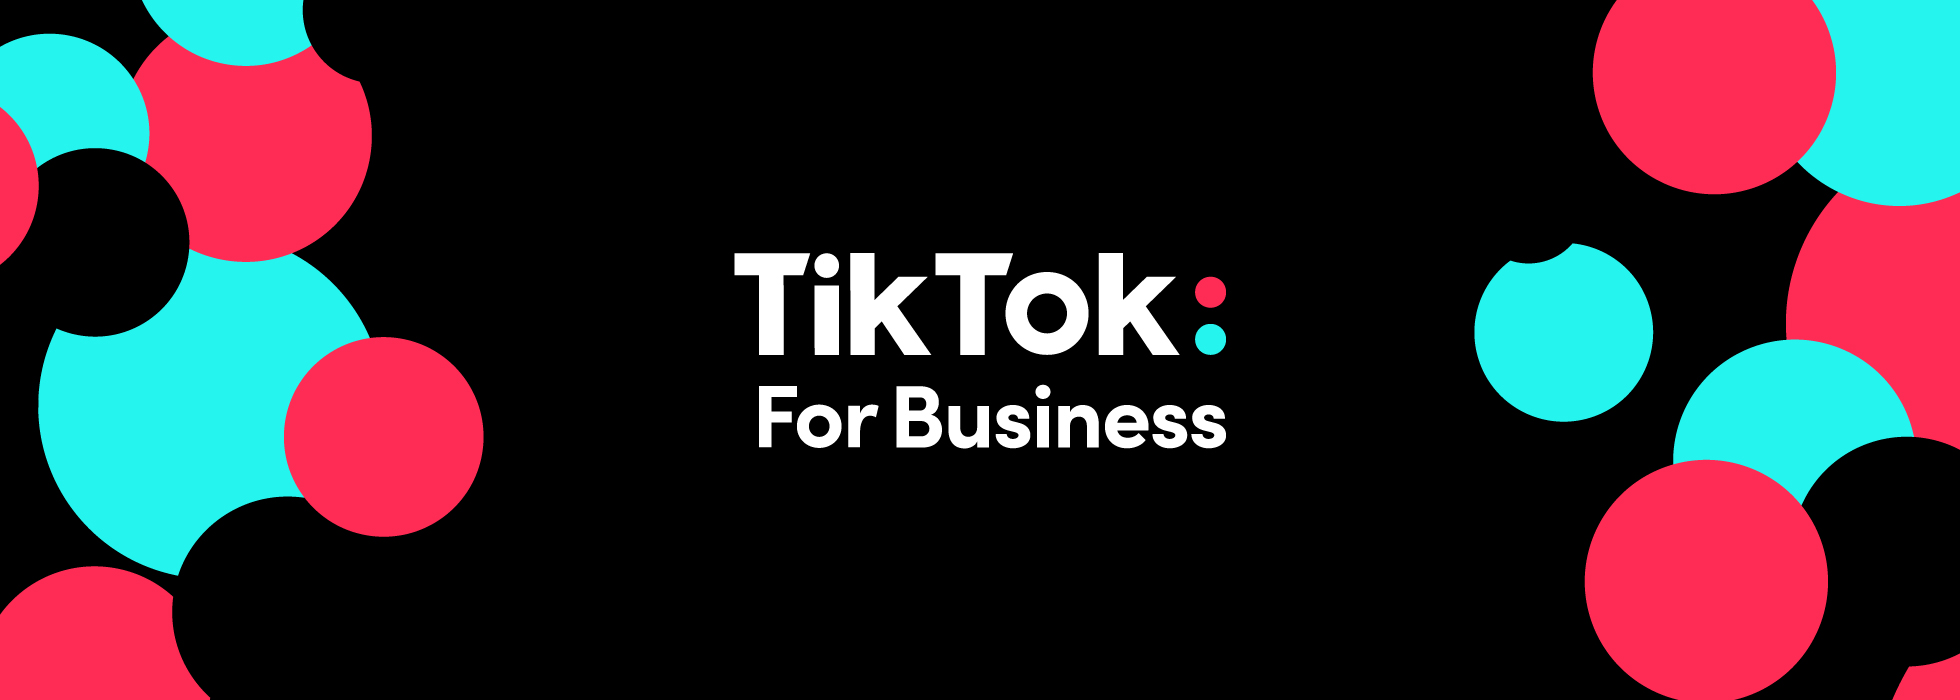 Cách quay video trên Tiktok nào bán hàng hiệu quả nhất?